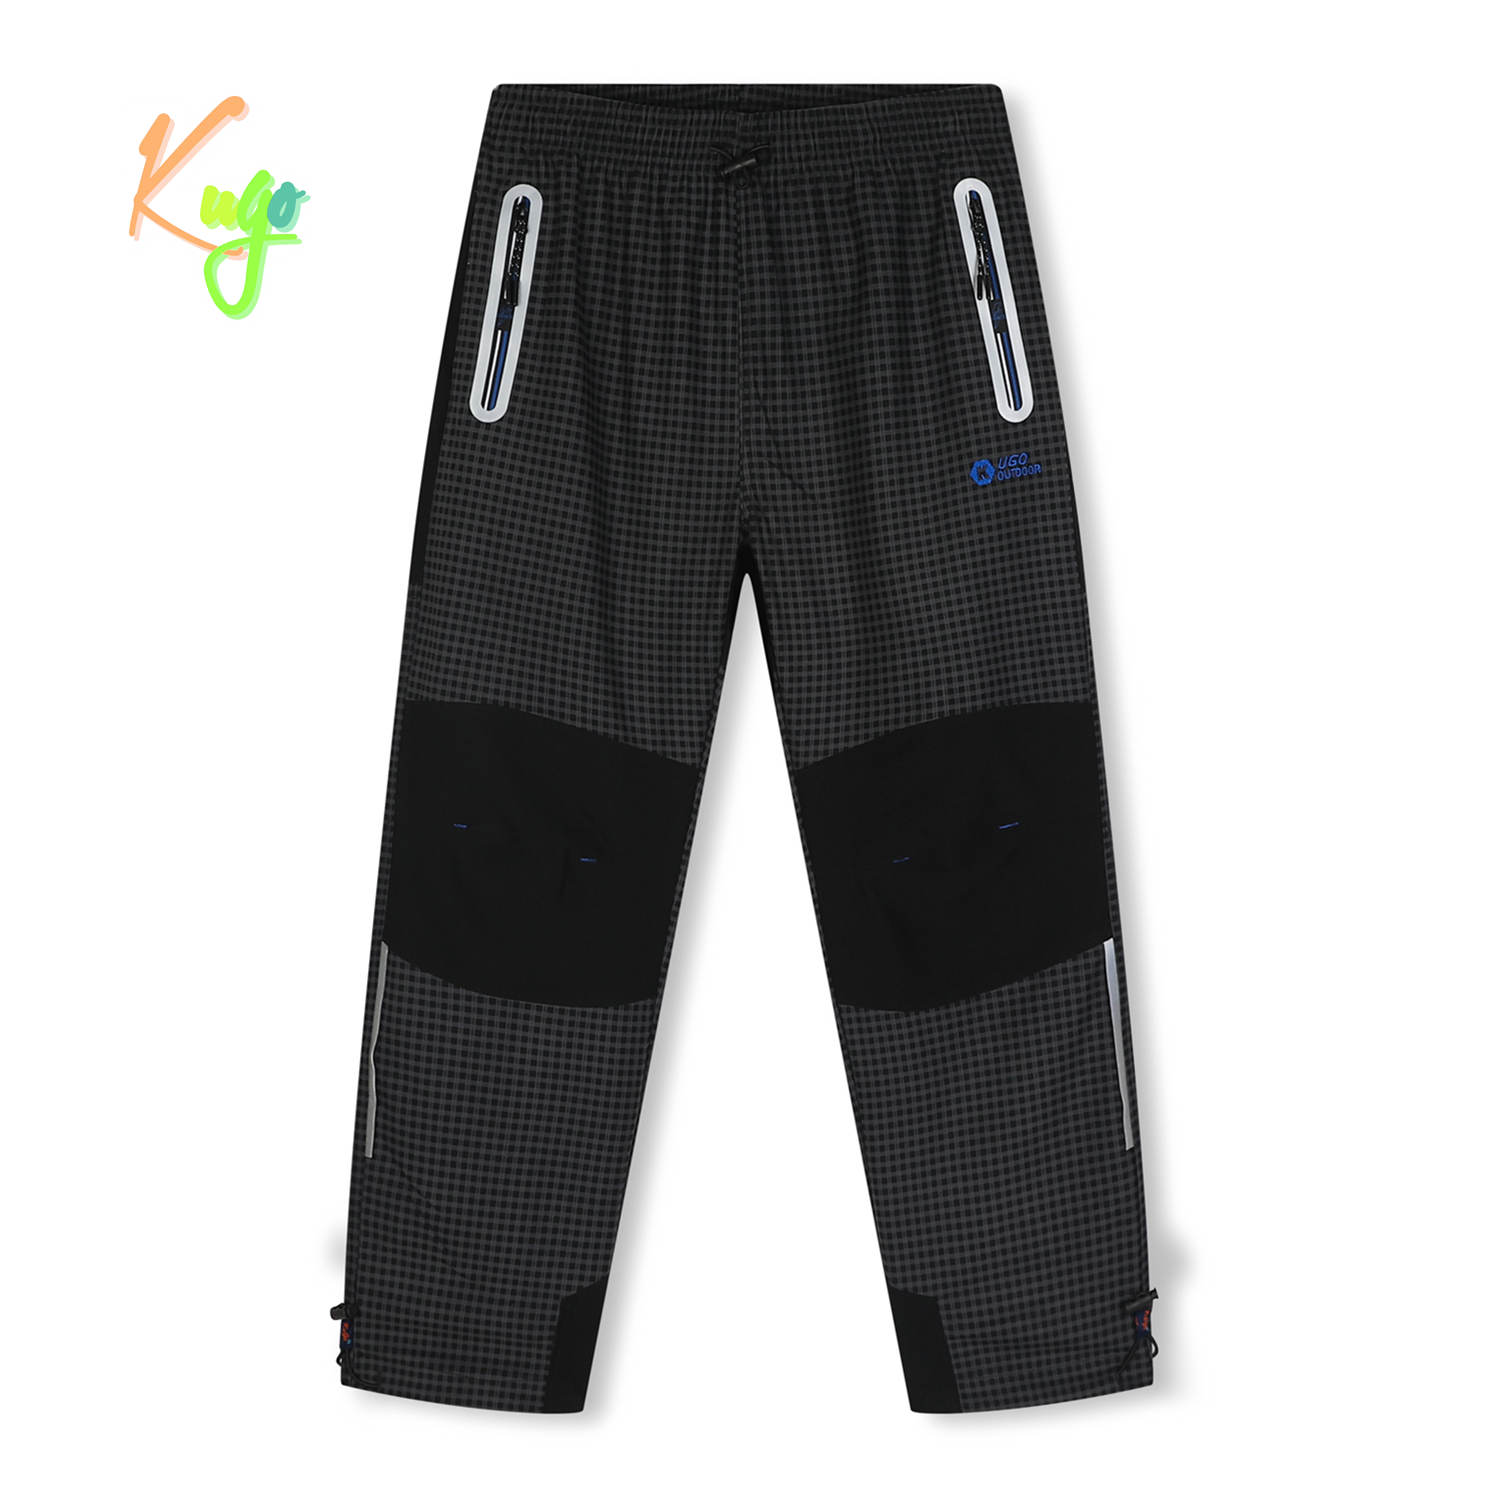 Chlapecké outdoorové kalhoty - KUGO G9658, šedá / modré zipy Barva: Šedá, Velikost: 146